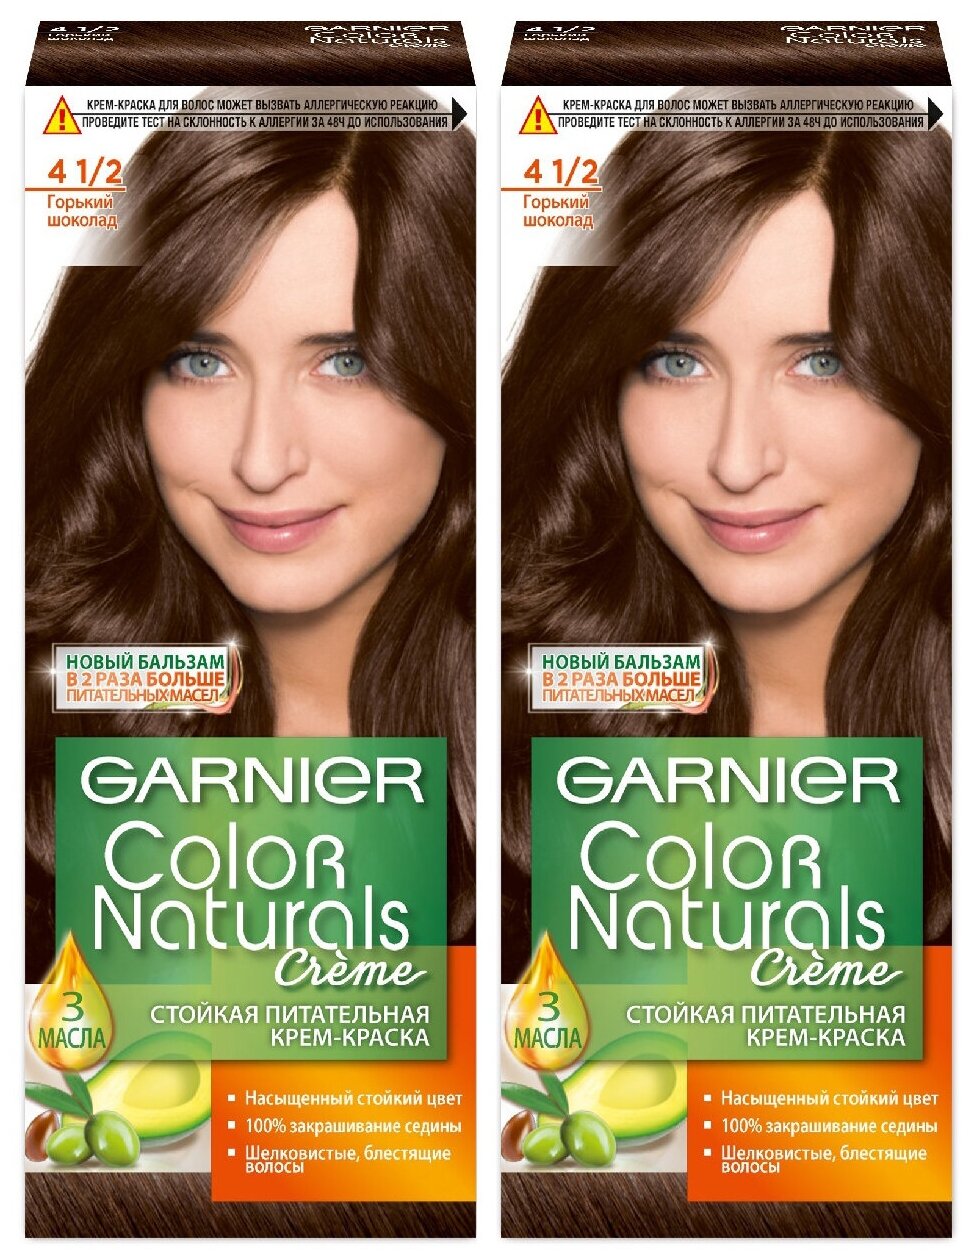 GARNIER Color Naturals Краска для волос №4 1/2 Горький шоколад (2 шт в наборе)